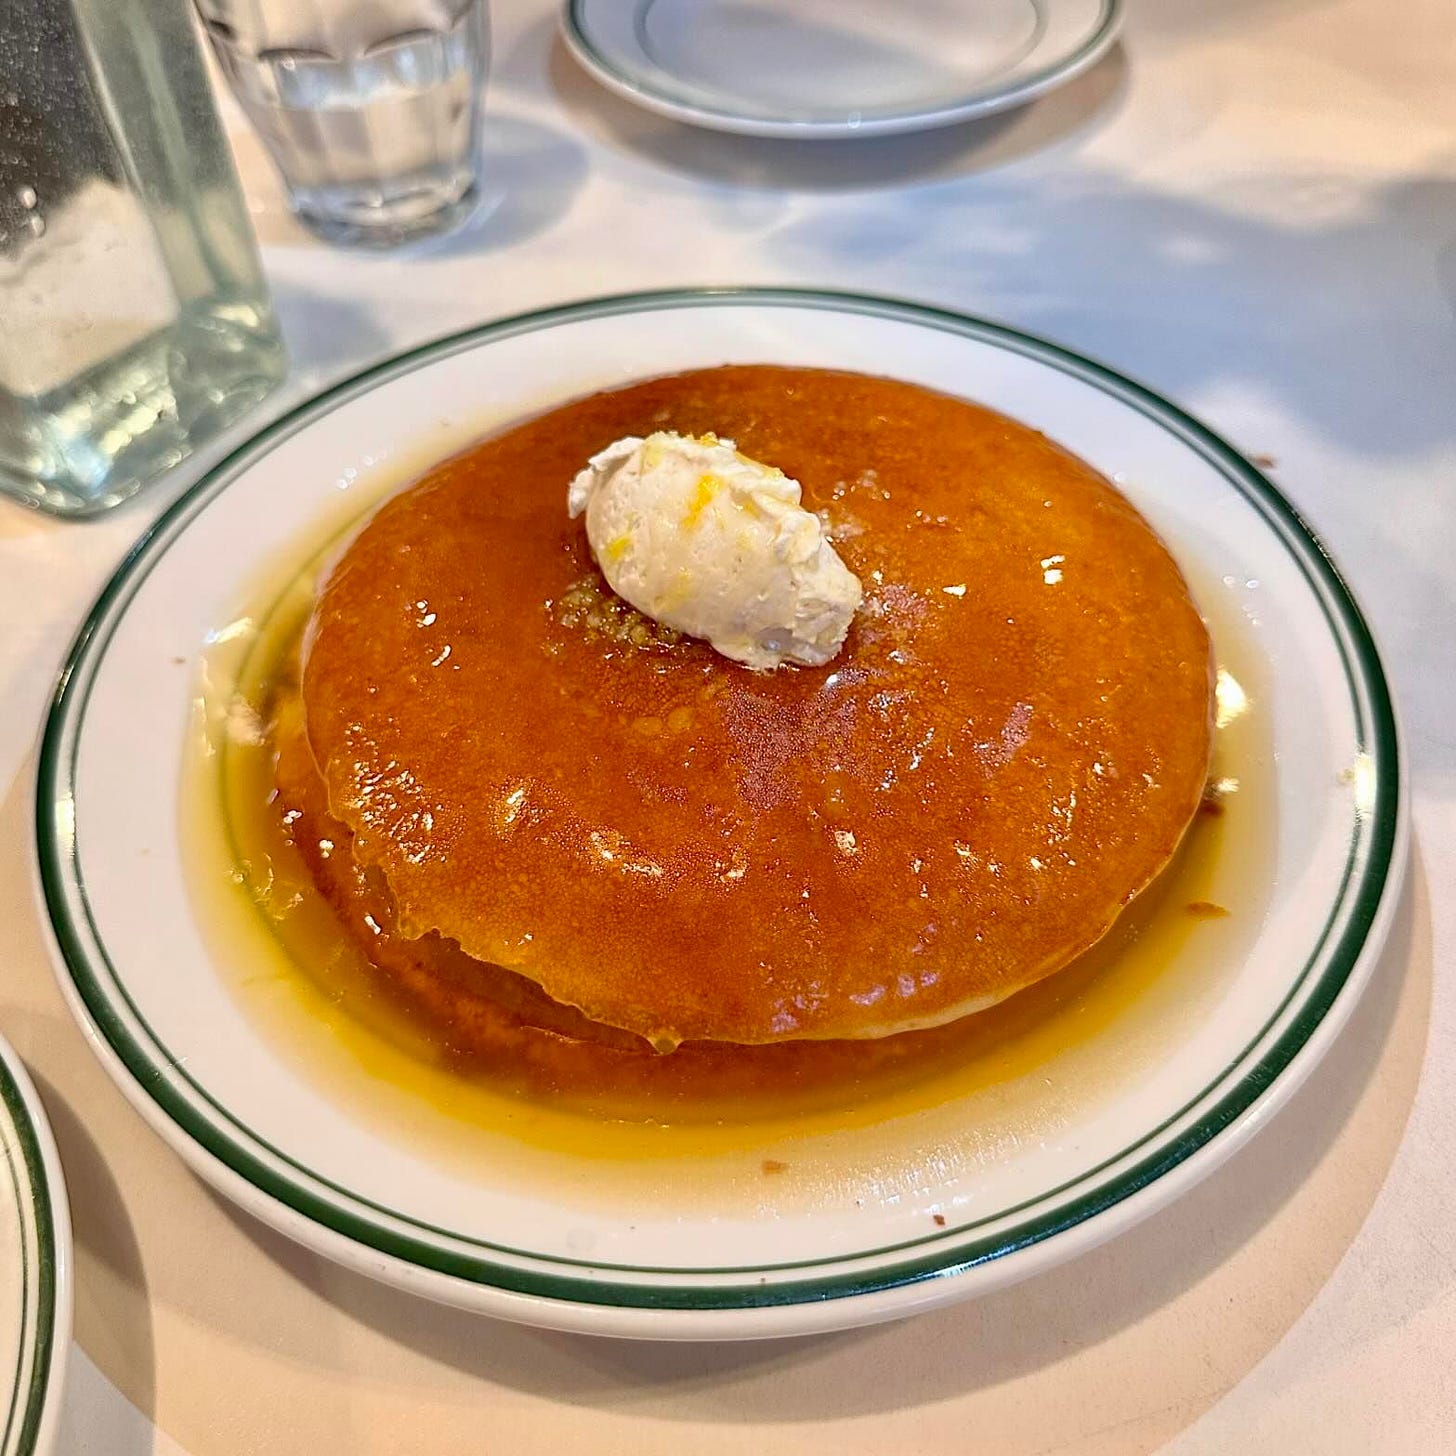 Golden Diner’s Honey Butter Pancakes